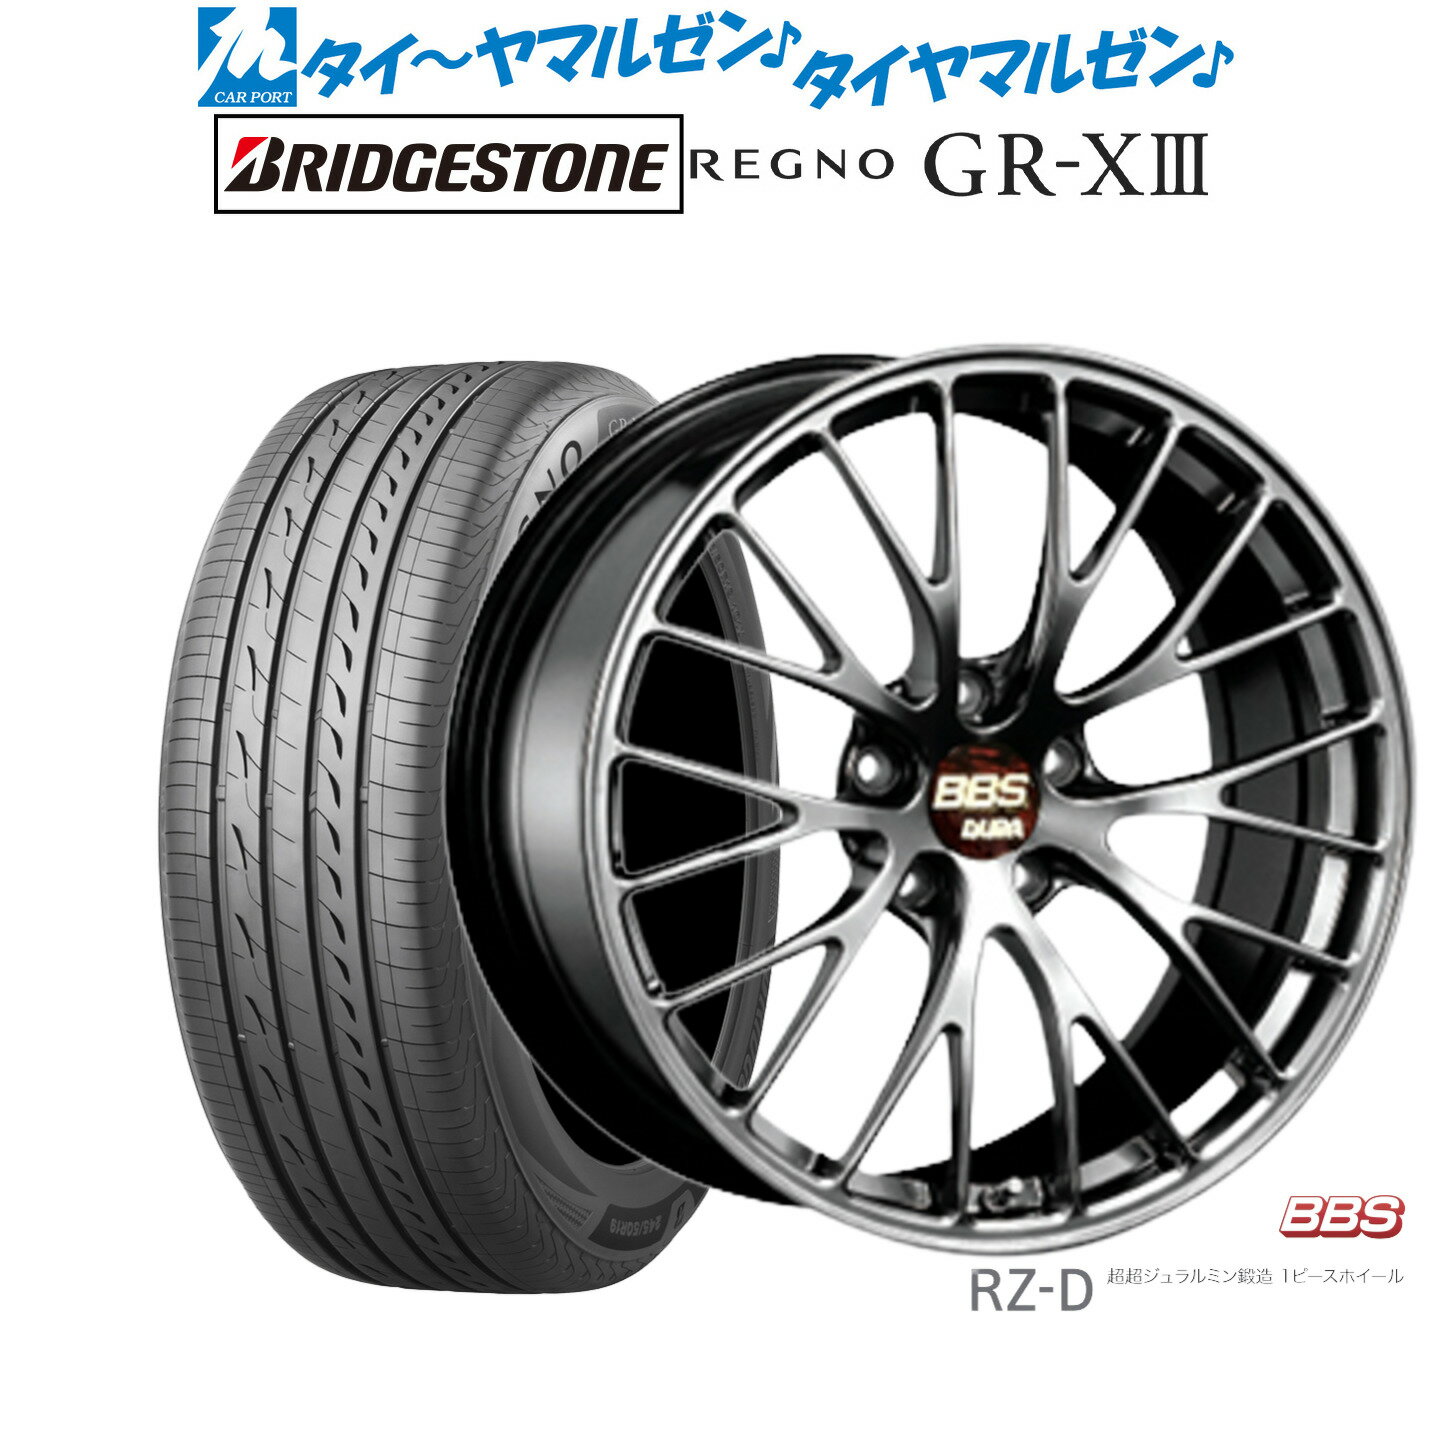 [5/23～26]割引クーポン配布新品 サマータイヤ ホイール4本セットBBS JAPAN RZ-D20インチ 8.5Jブリヂストン REGNO レグノ GR-XIII(GR-X3)245/40R20